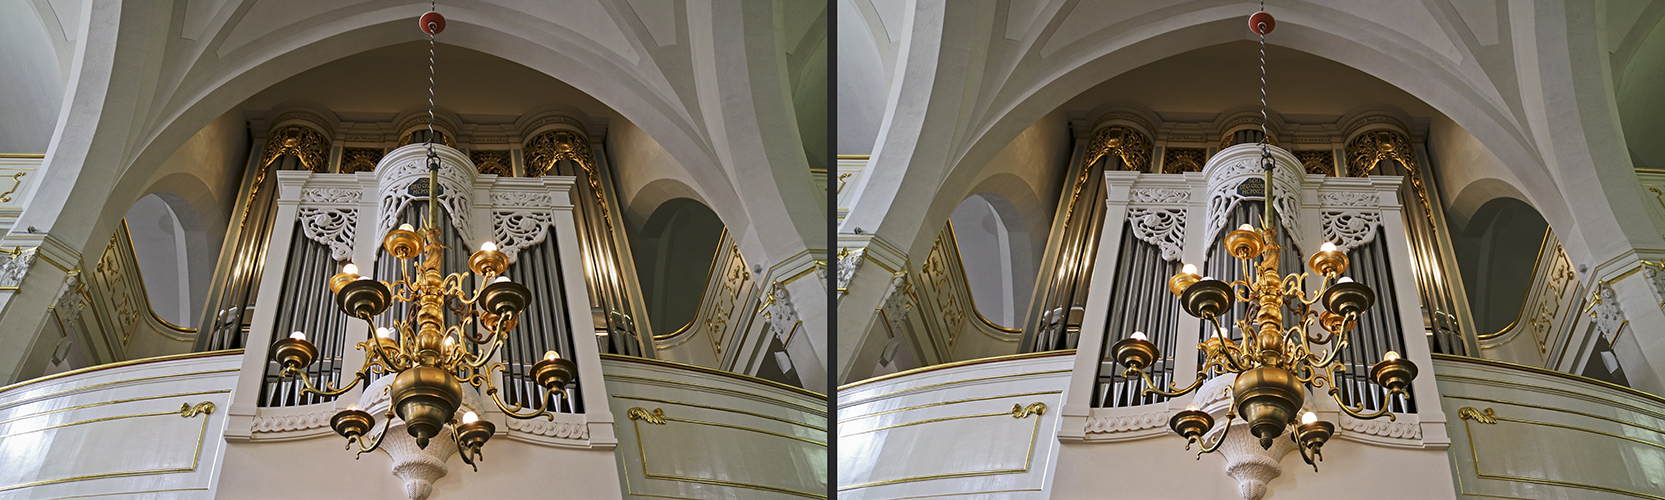 Orgel der Herderkirche, Weimar (3D)